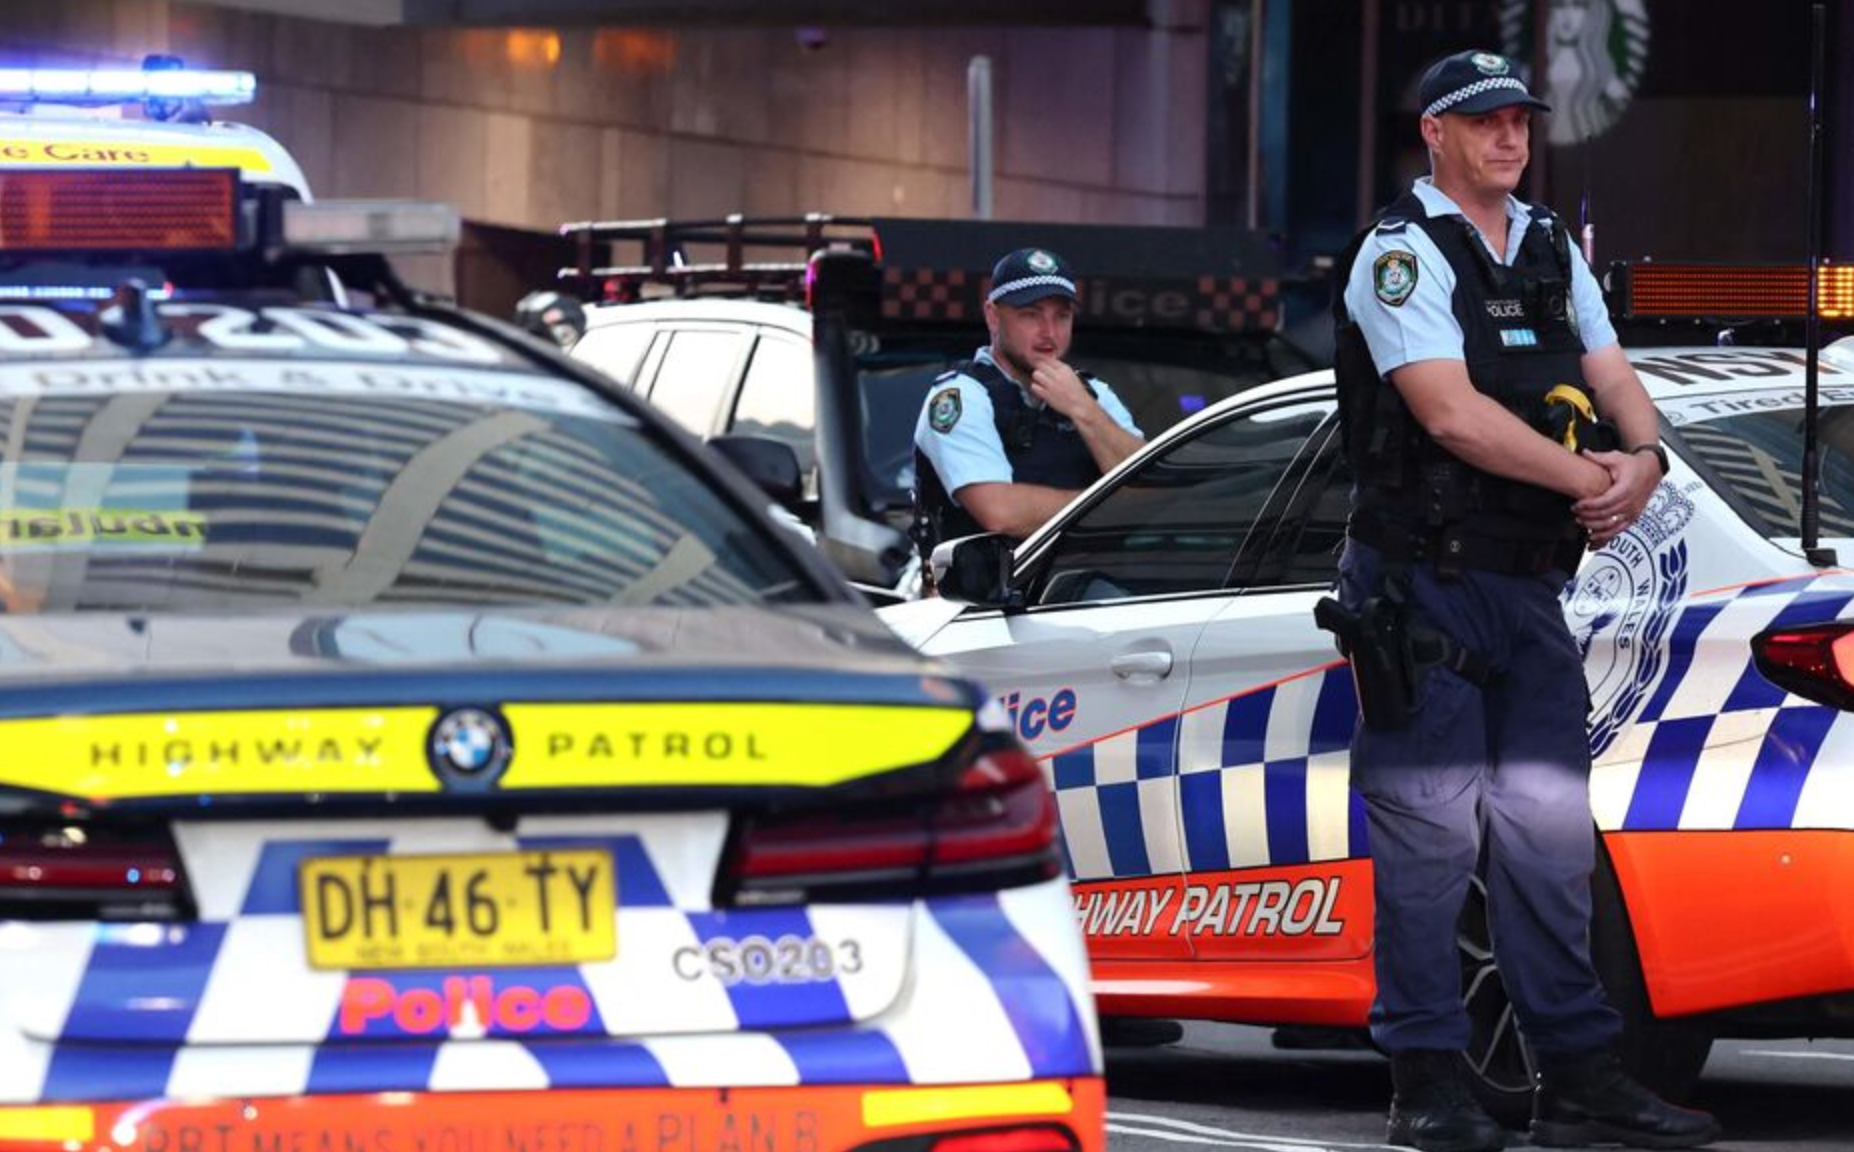 Arrestation d'un ado de 15 ans soupçonné de l'attaque au couteau à Sydney